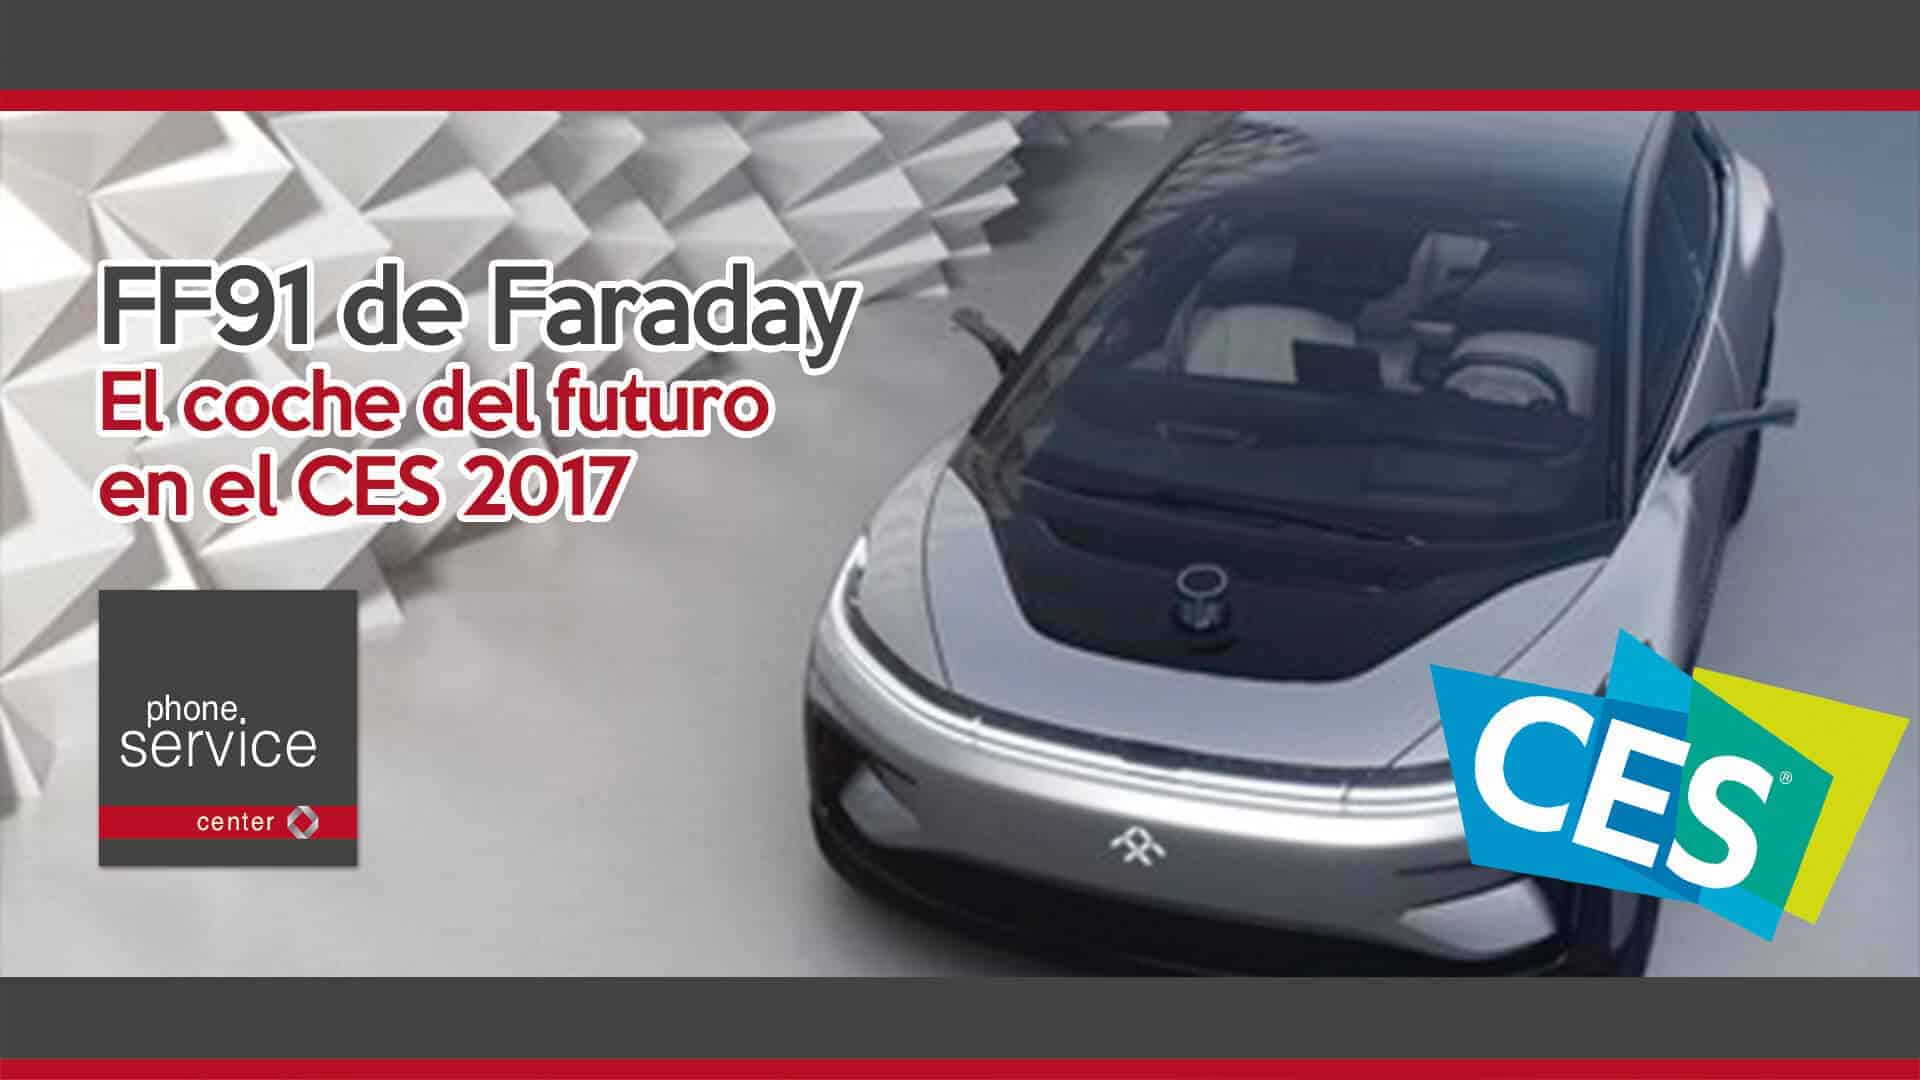 ff91-de-faraday-el-coche-del-futuro